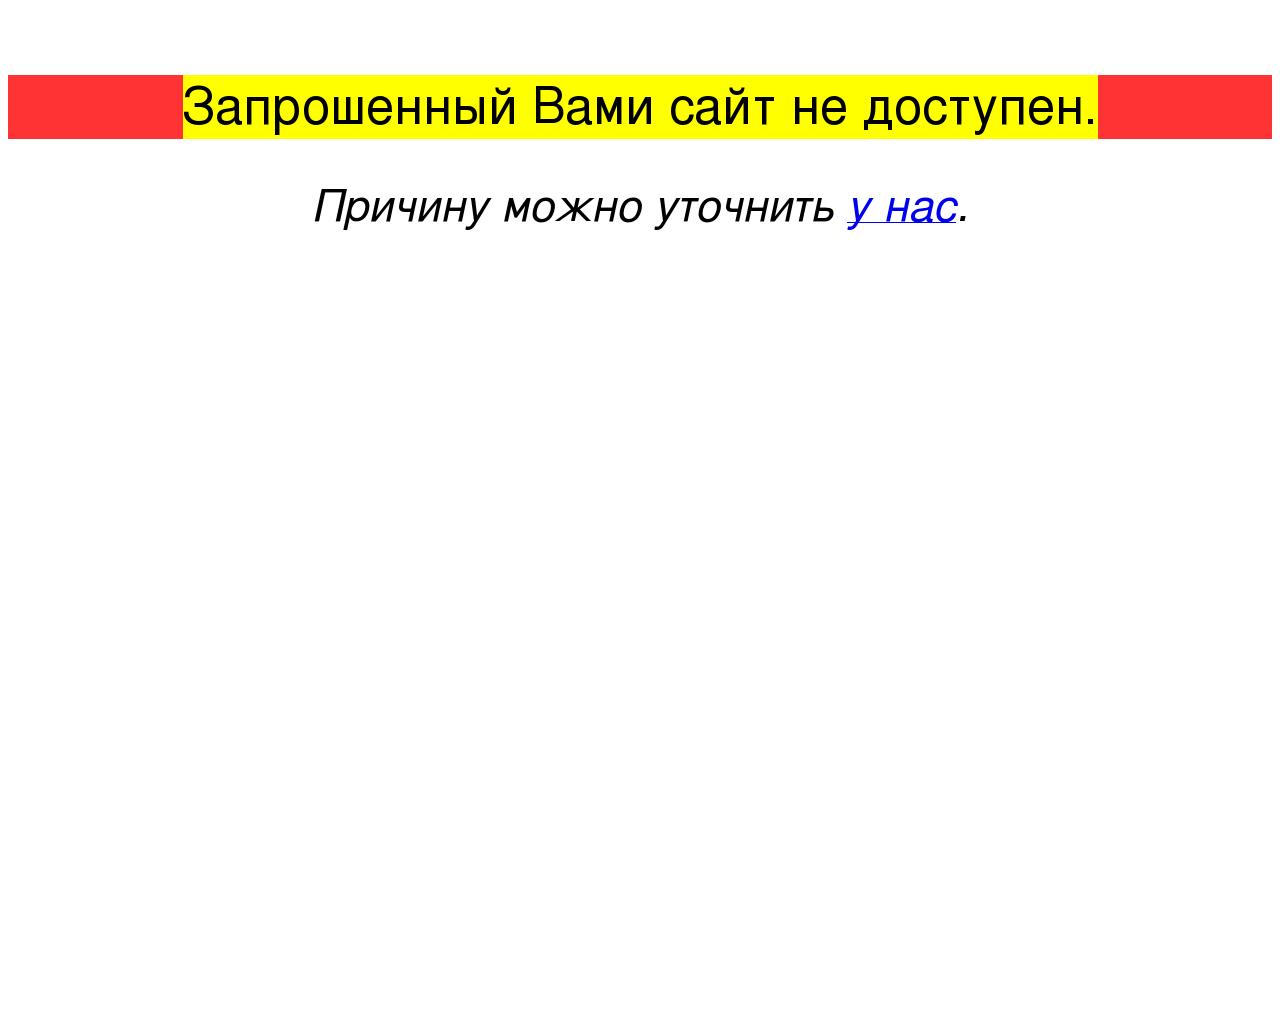 Изображение сайта reksil.ru в разрешении 1280x1024